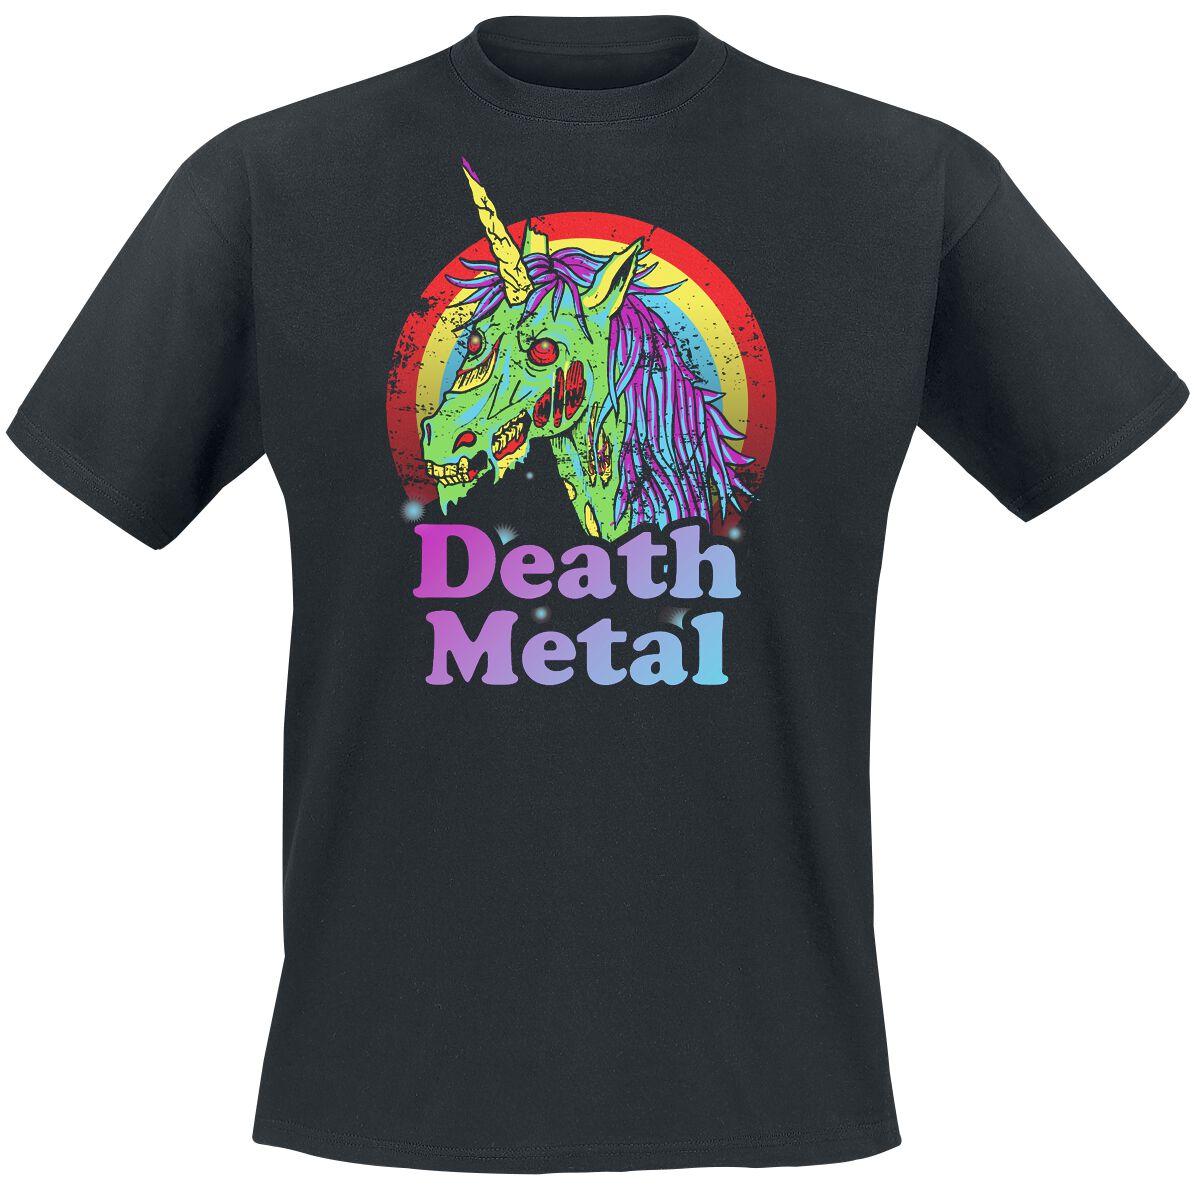 Funshirt T-Shirt - Death Metal - S bis 3XL - für Männer - Größe 3XL - schwarz